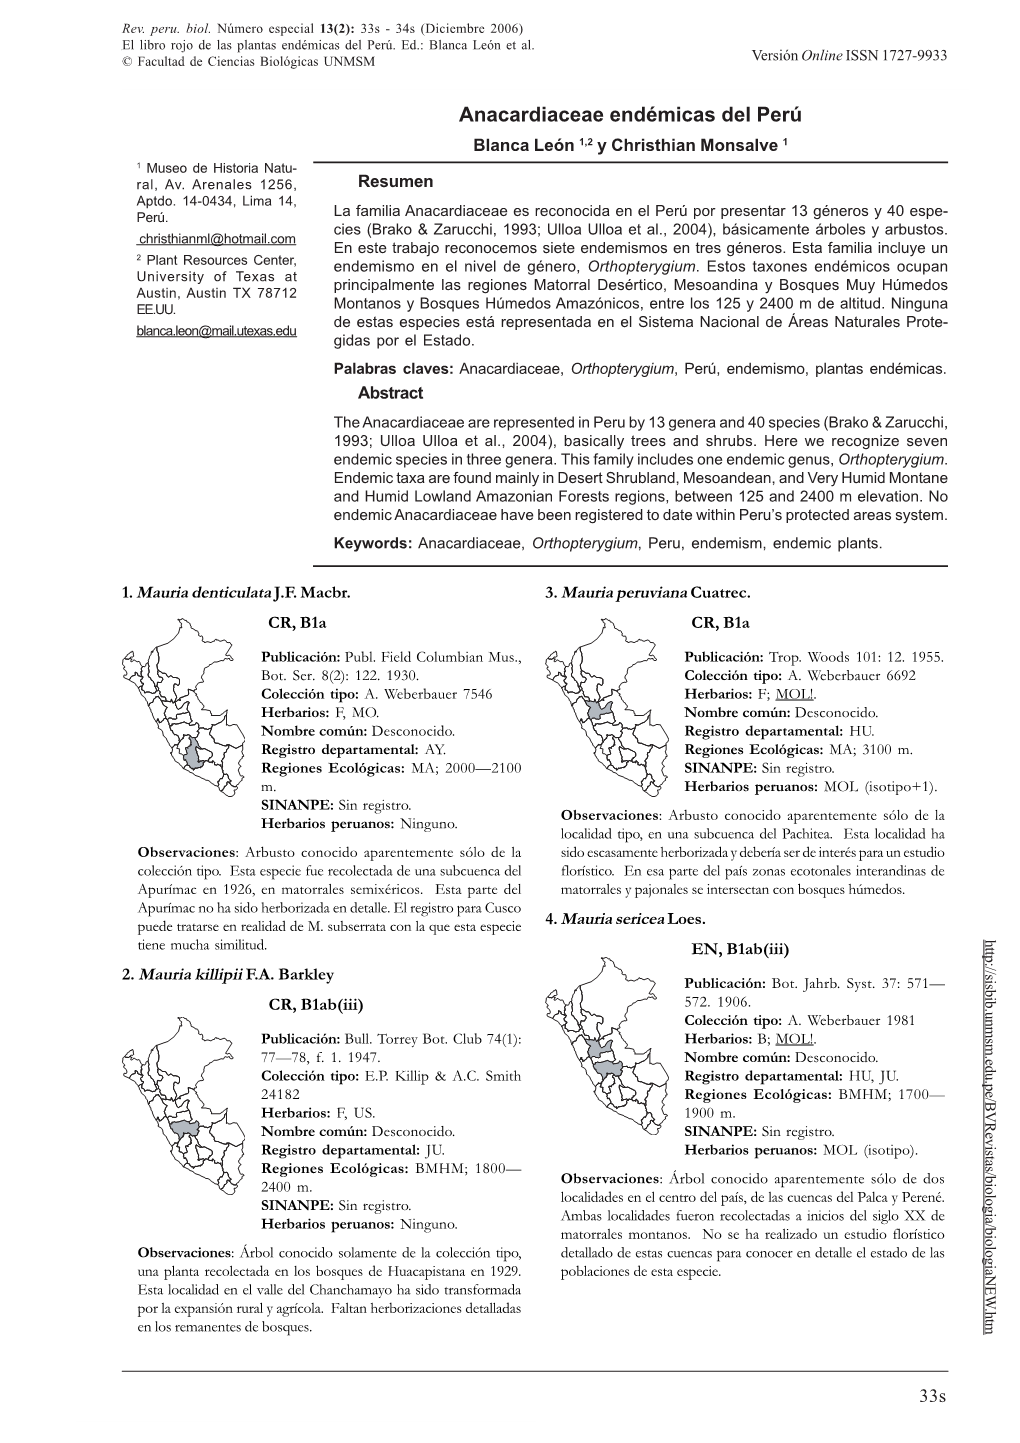 ANACARDIACEAE ENDÉMICAS DEL PERÚ © Facultad De Ciencias Biológicas UNMSM Versión Online ISSN 1727-9933